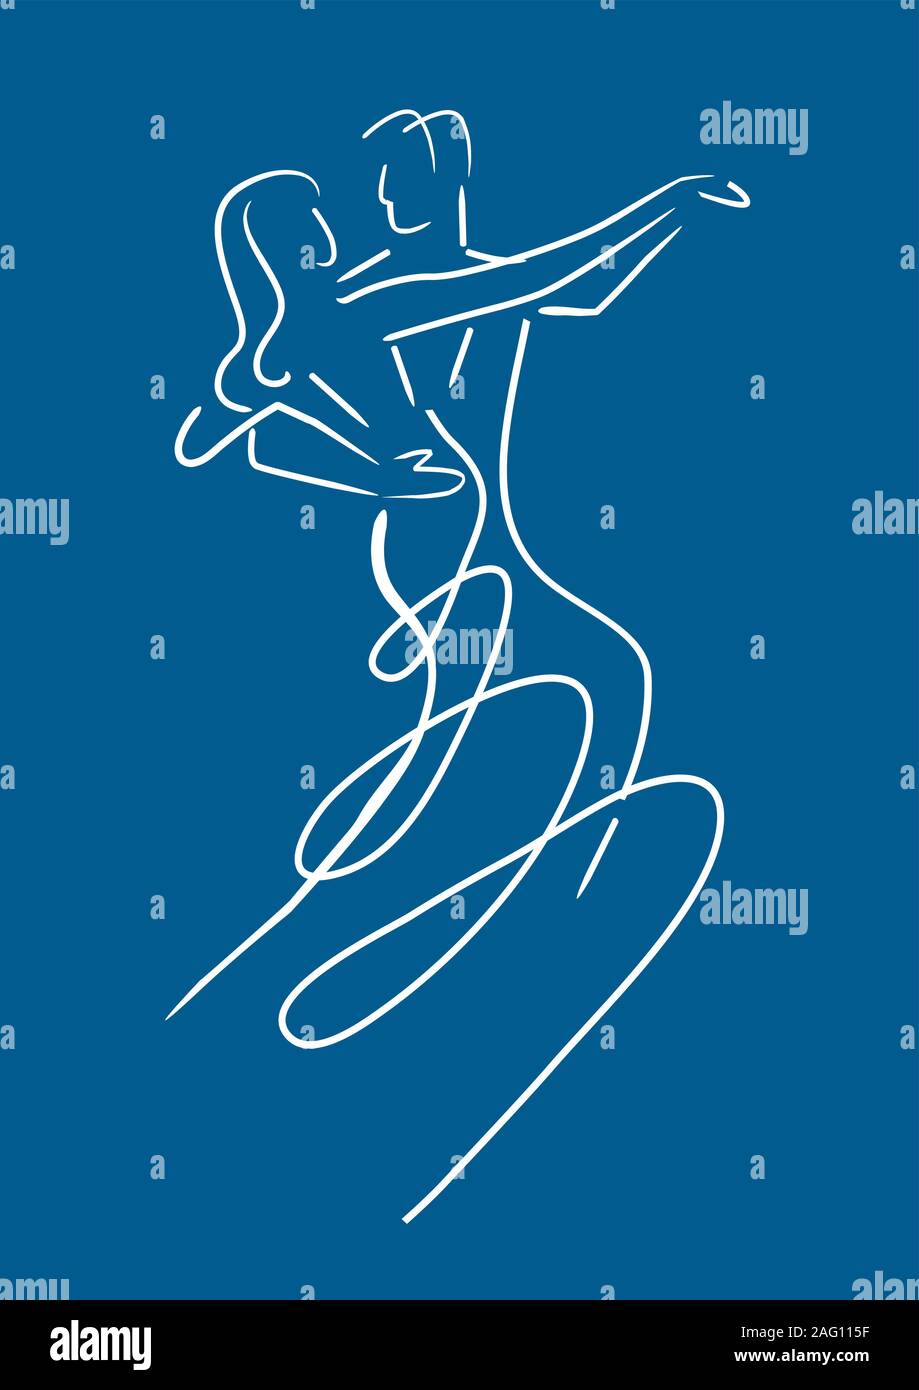 Ev Balroom coppia di ballerini. Arte di linea stilizzata illustrazione della coppia danzante il ballo liscio su sfondo blu. Vettore disponibile. Illustrazione Vettoriale